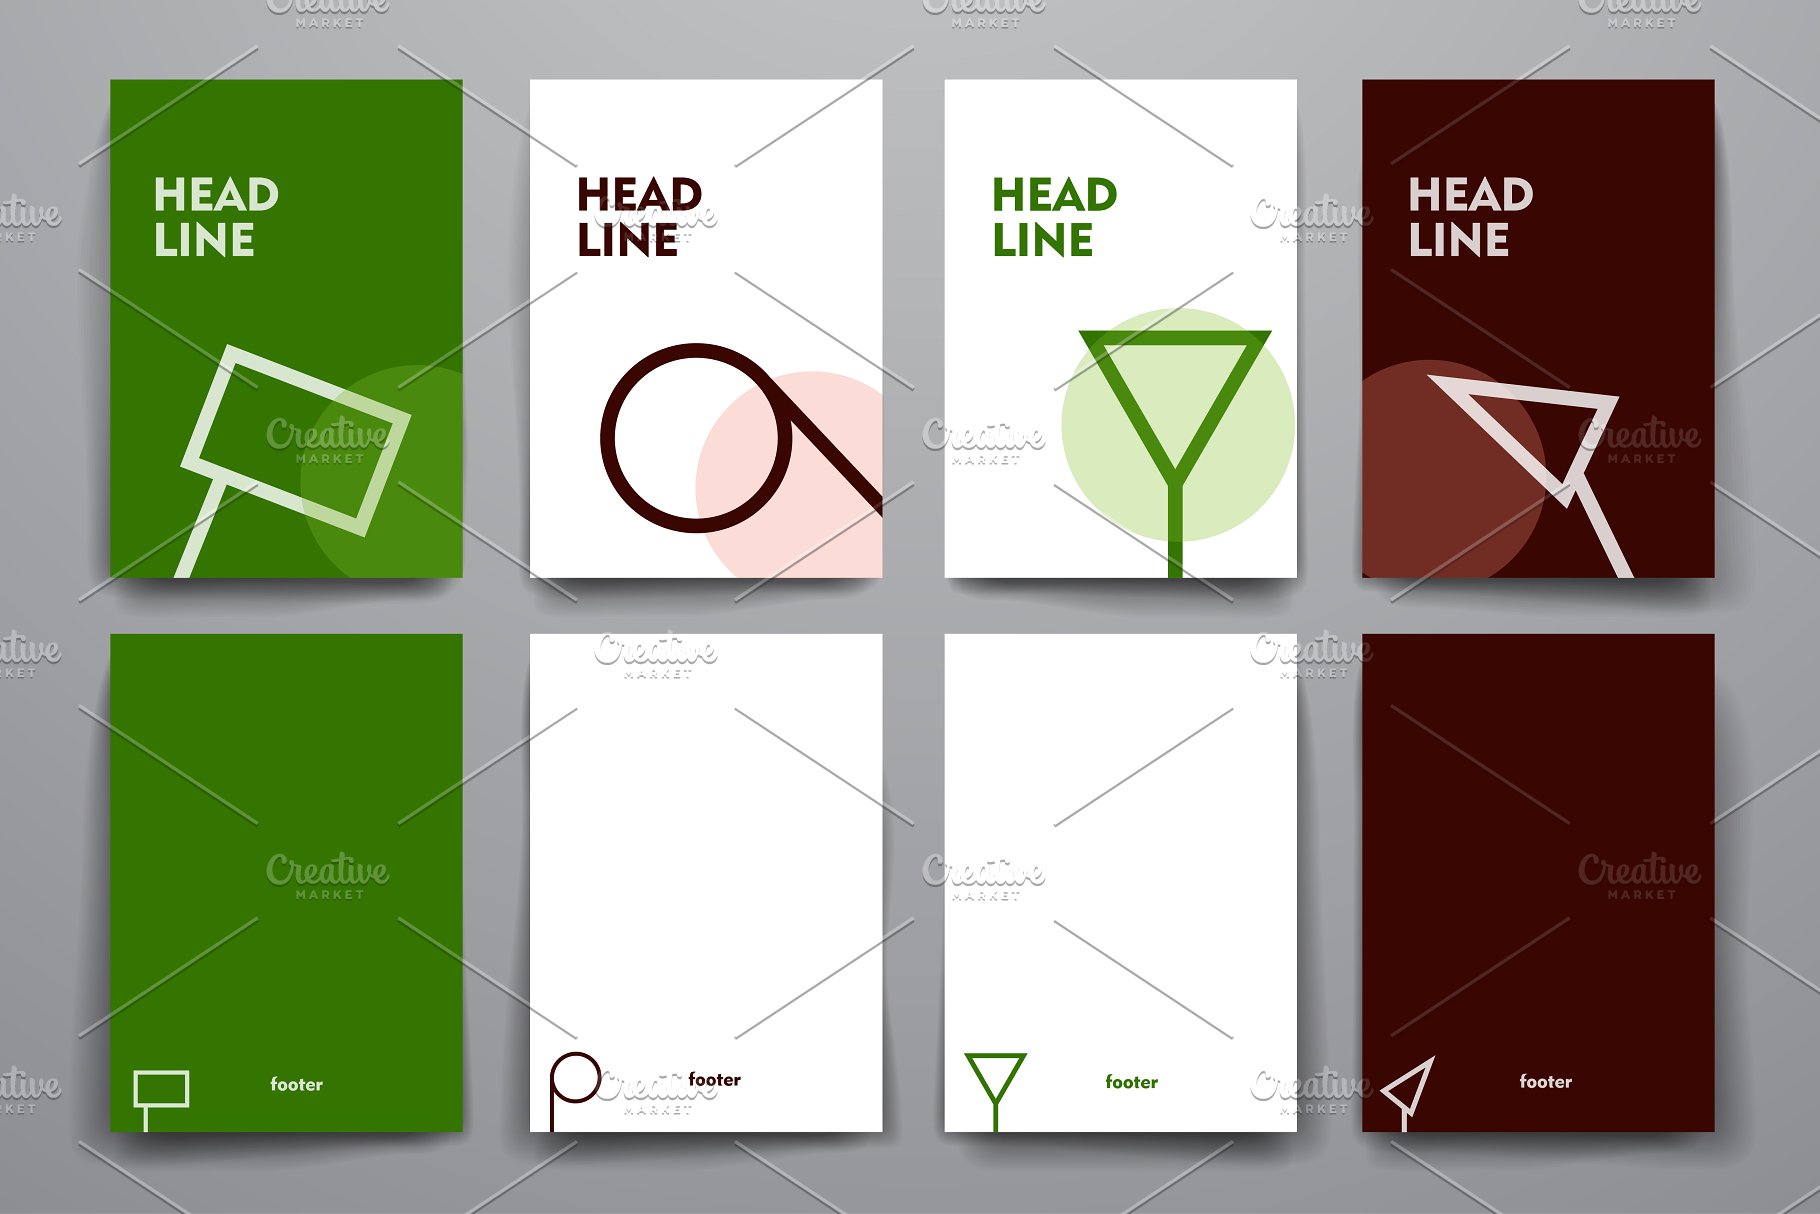 简约小册子传单设计模板 Set of Simple Brochures插图(13)